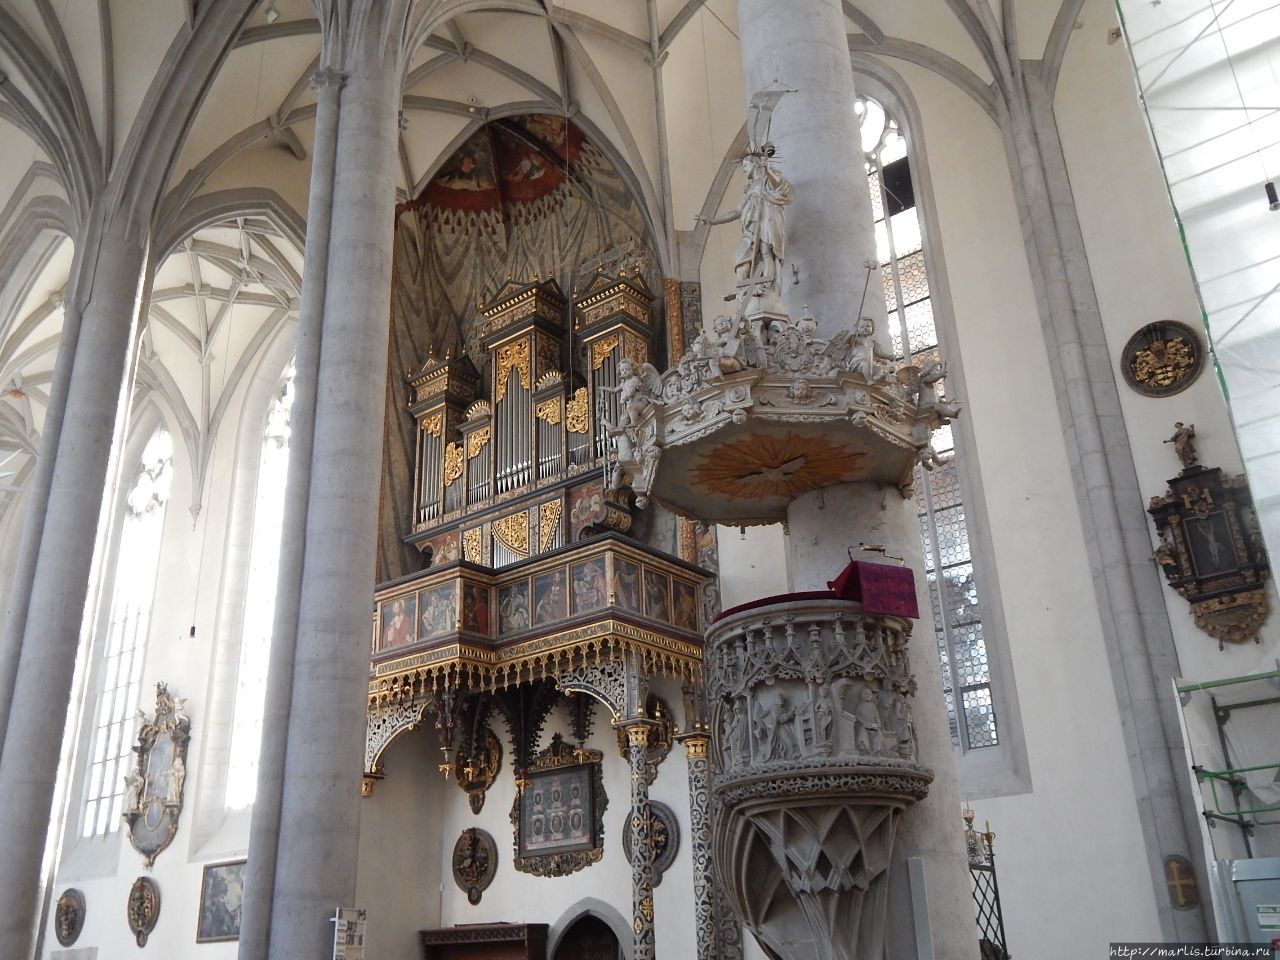 Церковь св. Георгия, Колокольня пророка Даниилa Нёрдлинген, Германия